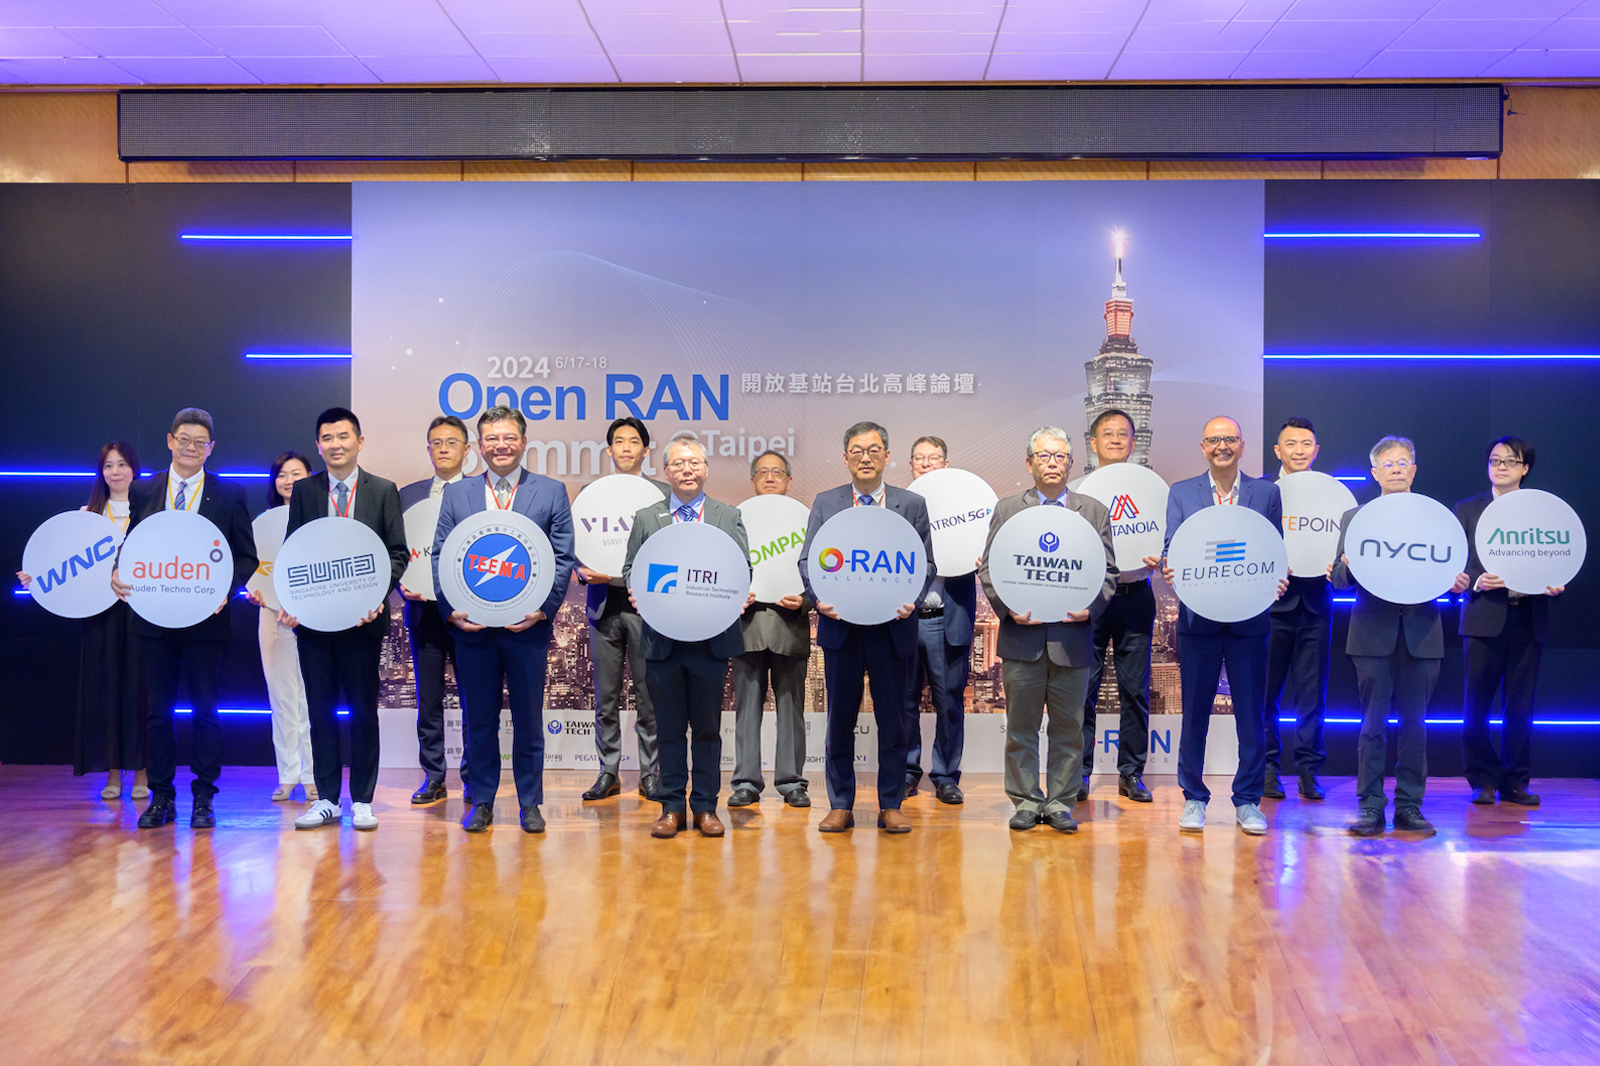 國際O-RAN聯盟首次來臺支持開放基站高峰論壇　美歐亞產學研專家聚焦標準技術、5G專網、電信AI應用